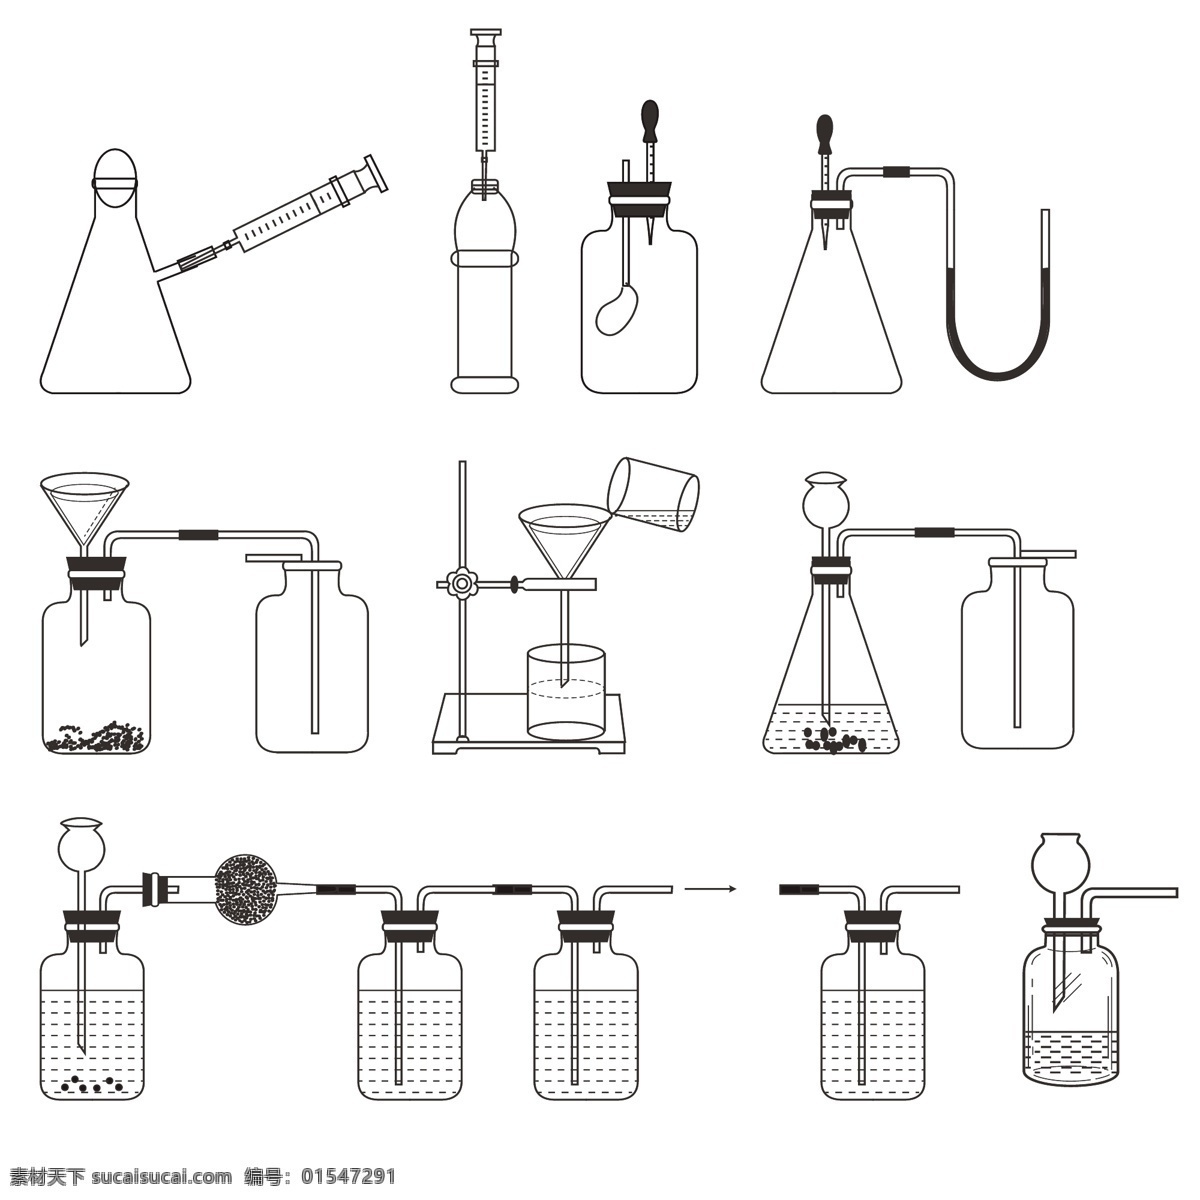 烧瓶导管组合 烧瓶 导管 装置 实验 仪器 化学仪器 化学实验 现代科技 科学研究